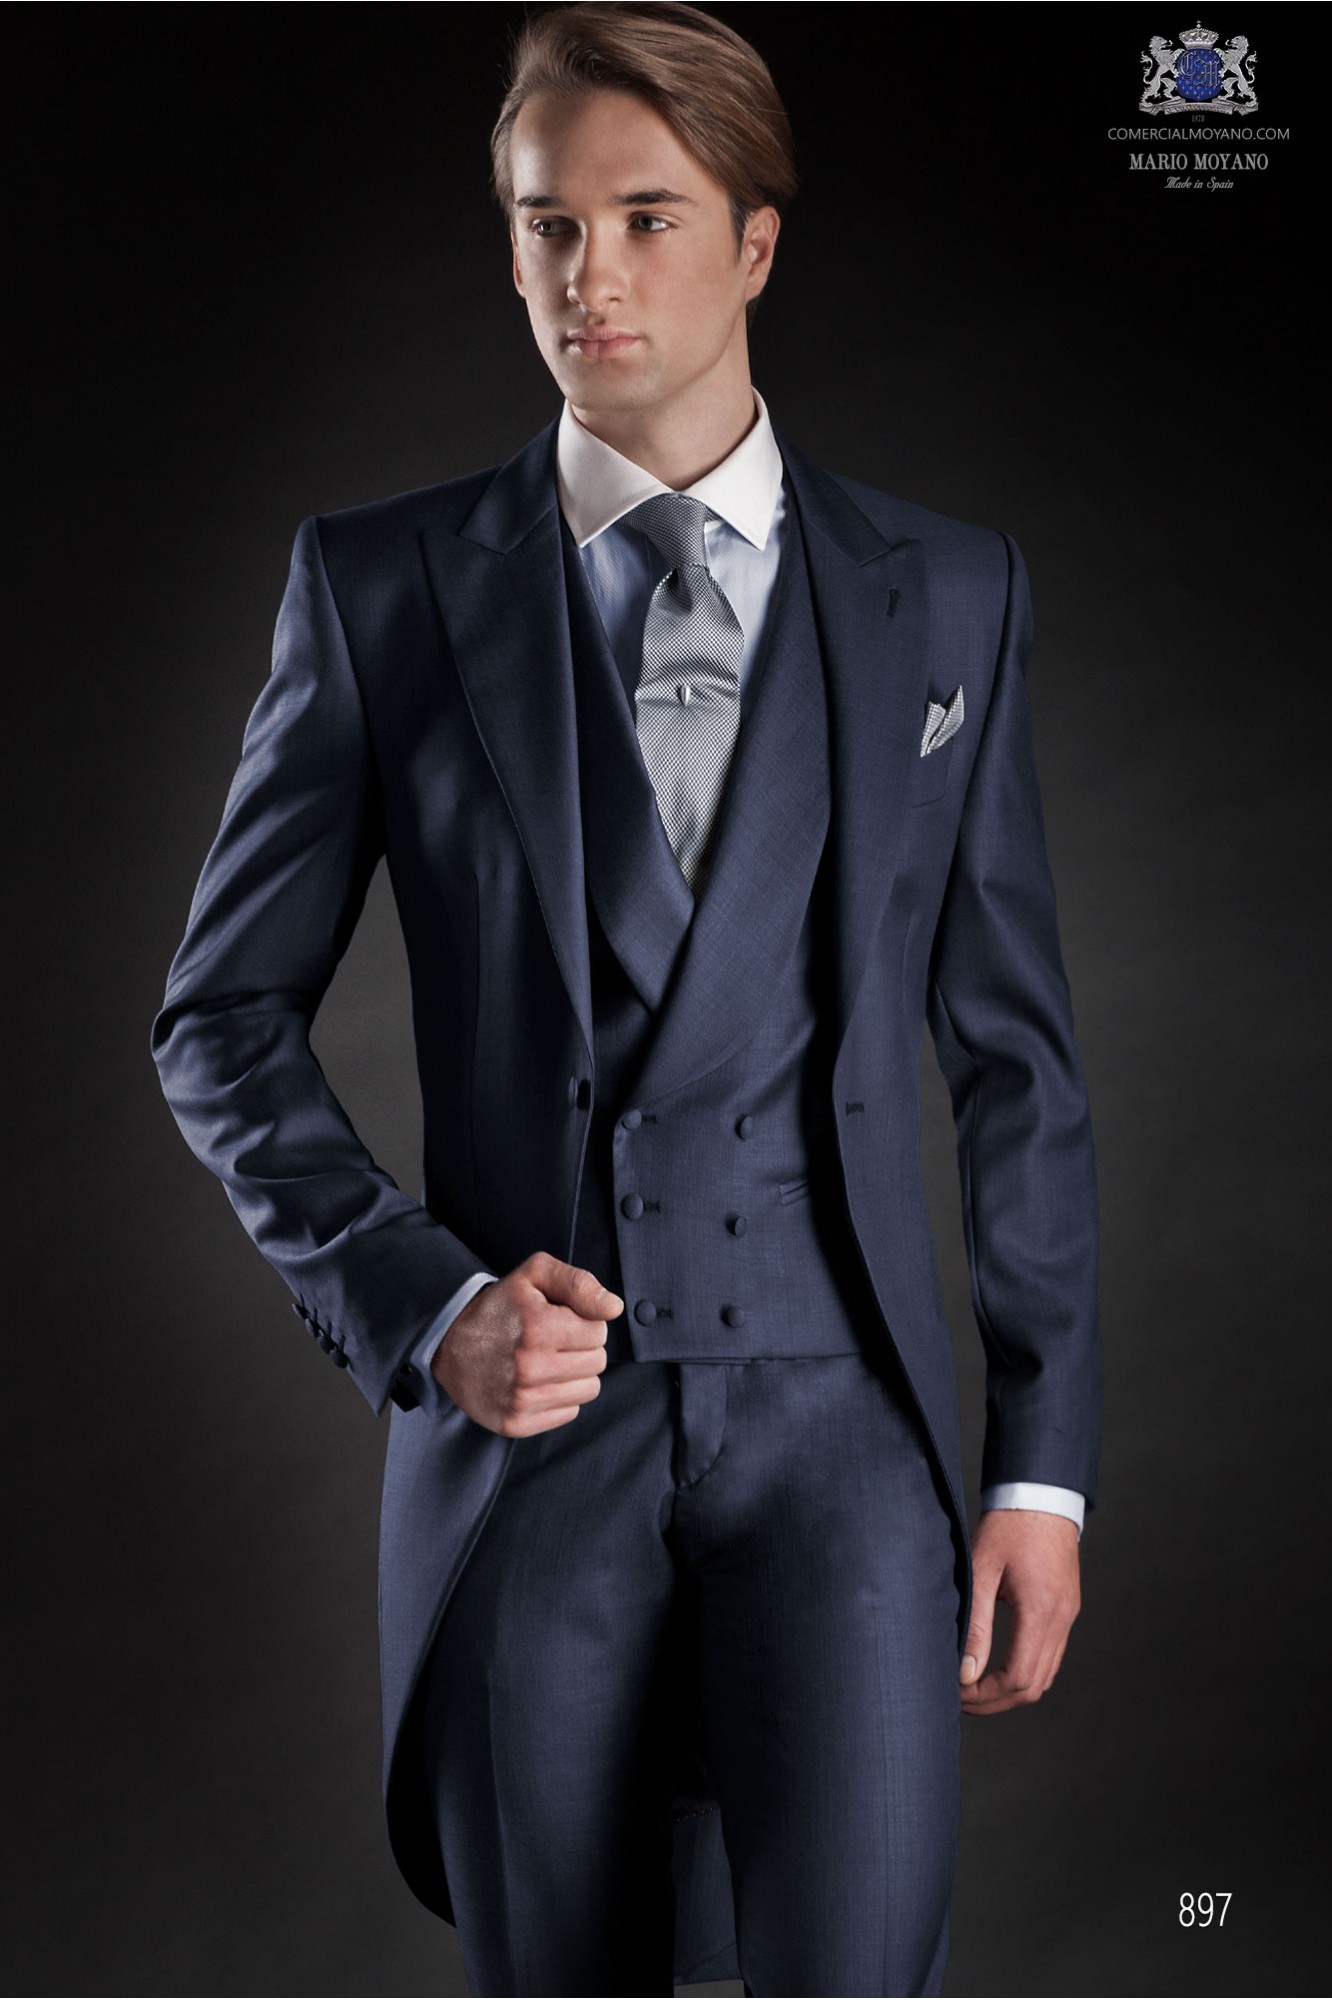 Gentleman blue men wedding suit model 897 Mario Moyano